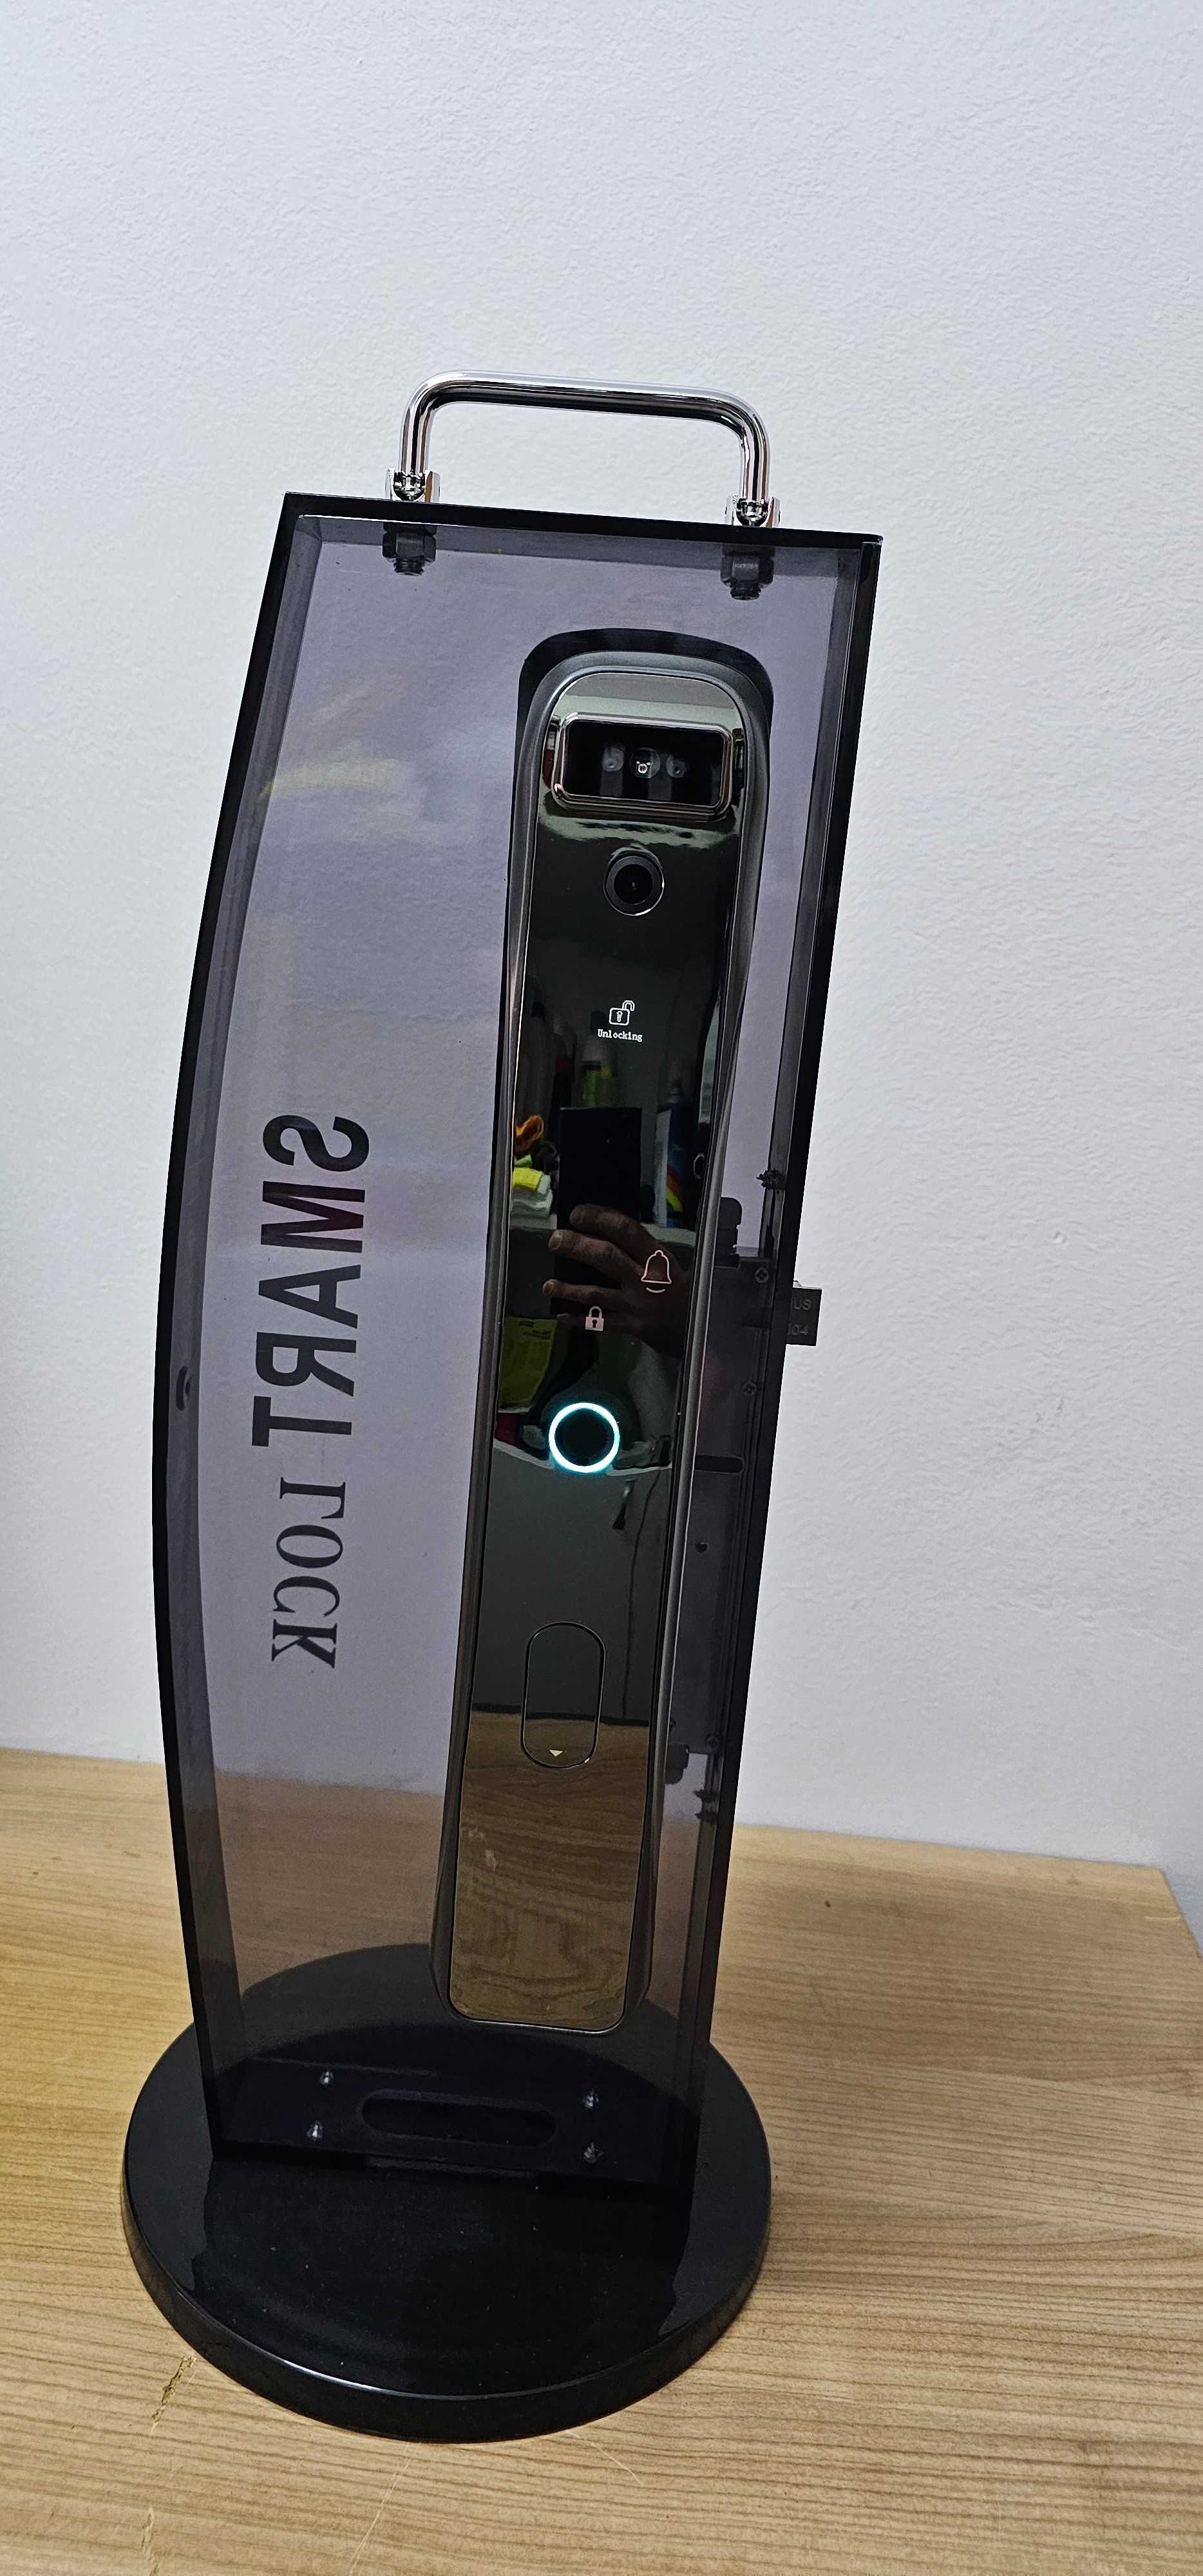 Broasca usa Smart camera recunoastere faciala-TRANSPORT GRATUIT